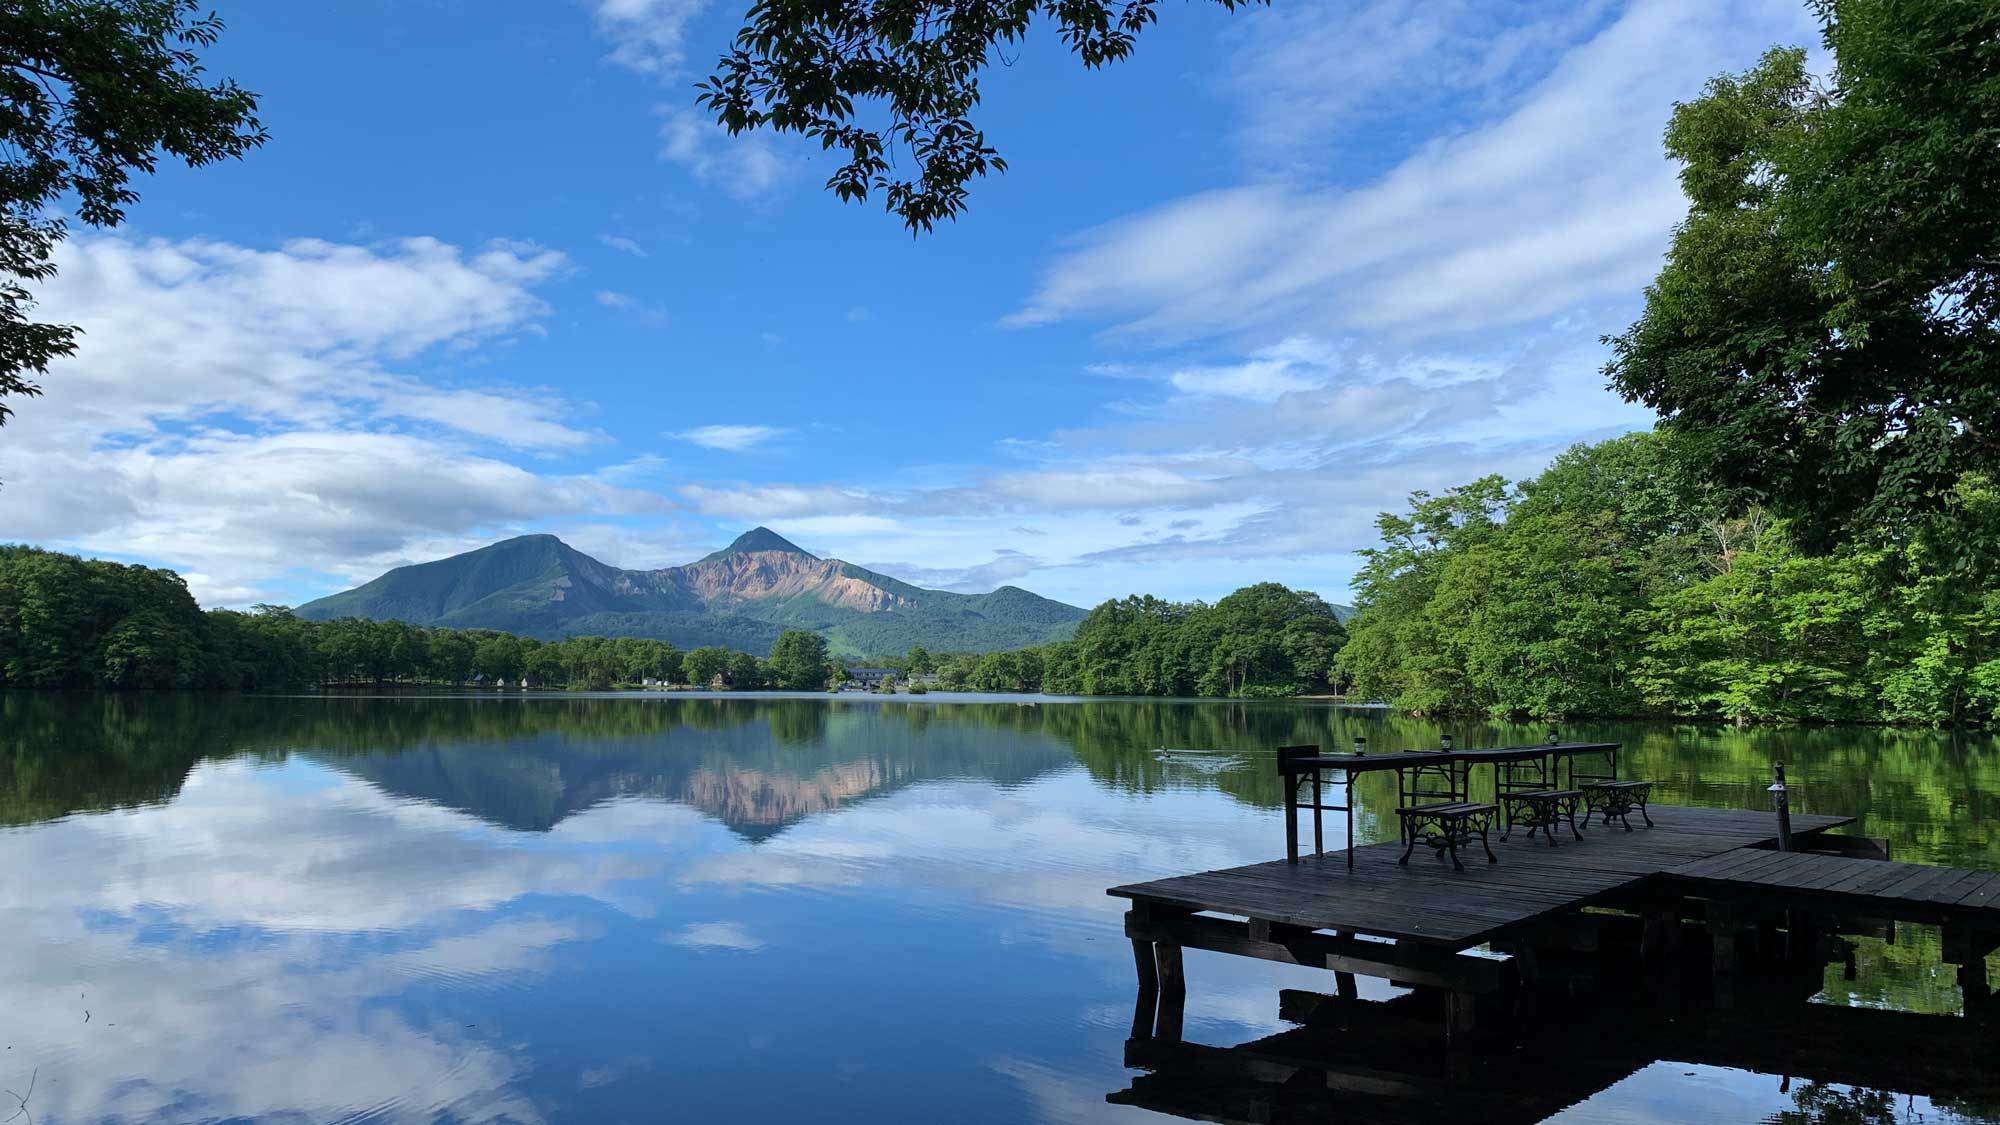 曽原湖にうつる磐梯山が絶景です。